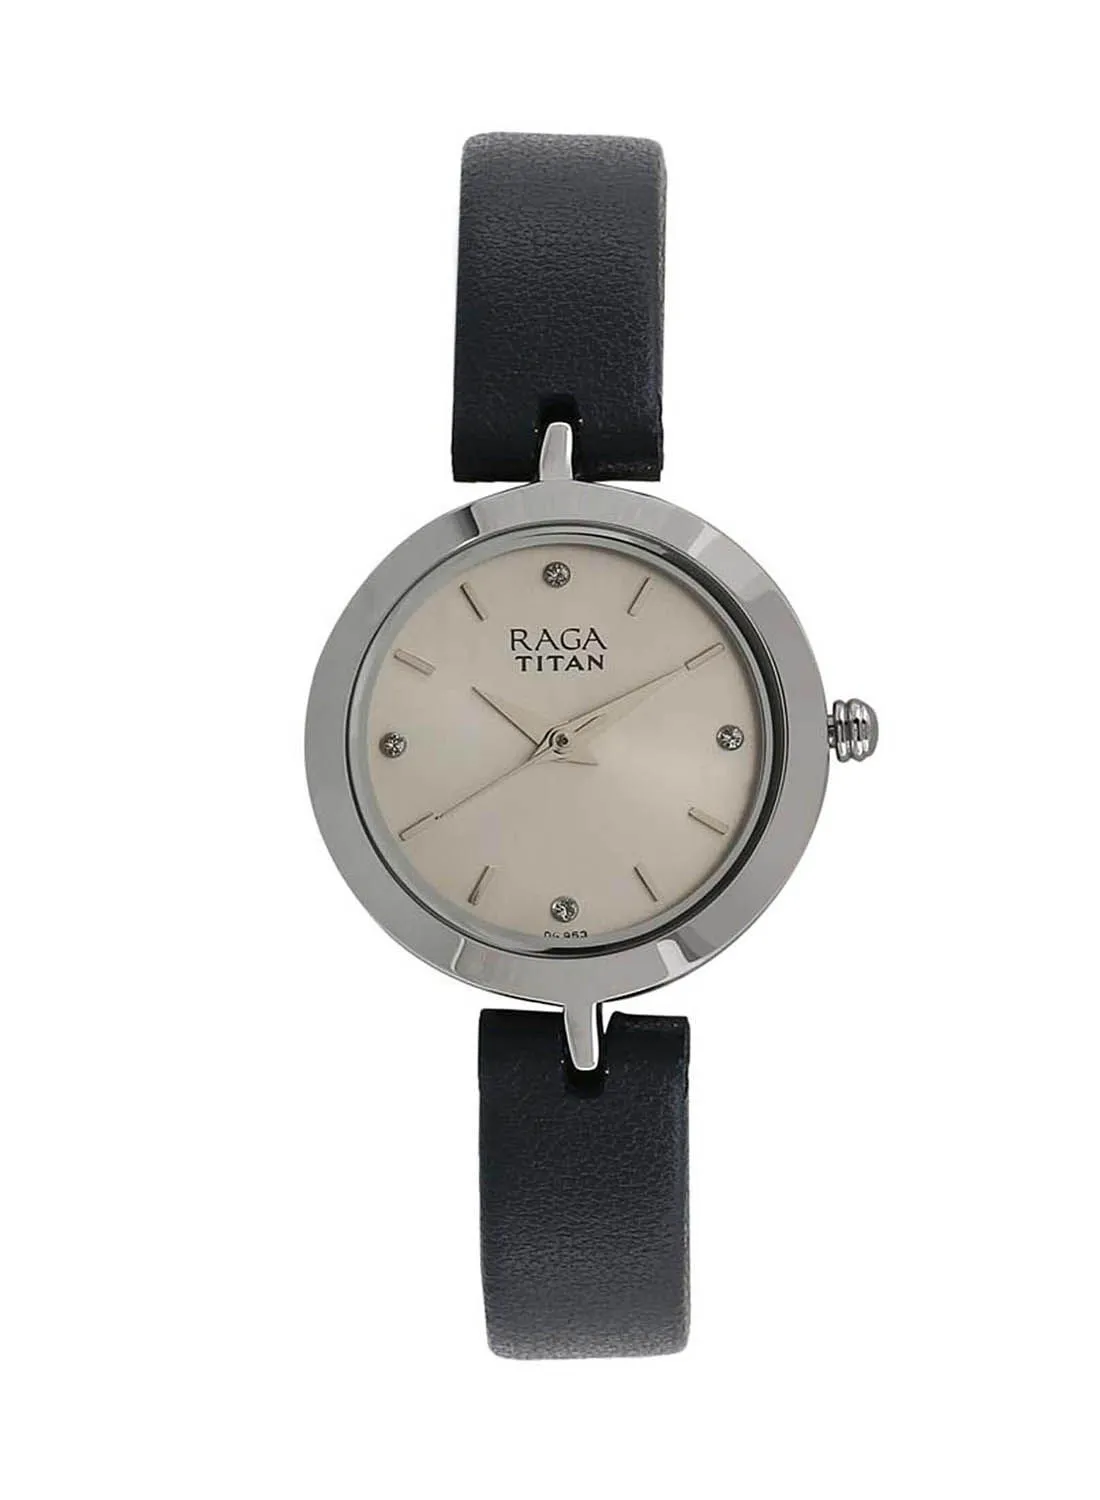 TITAN Leather Analog Wrist Watch 2540SL01